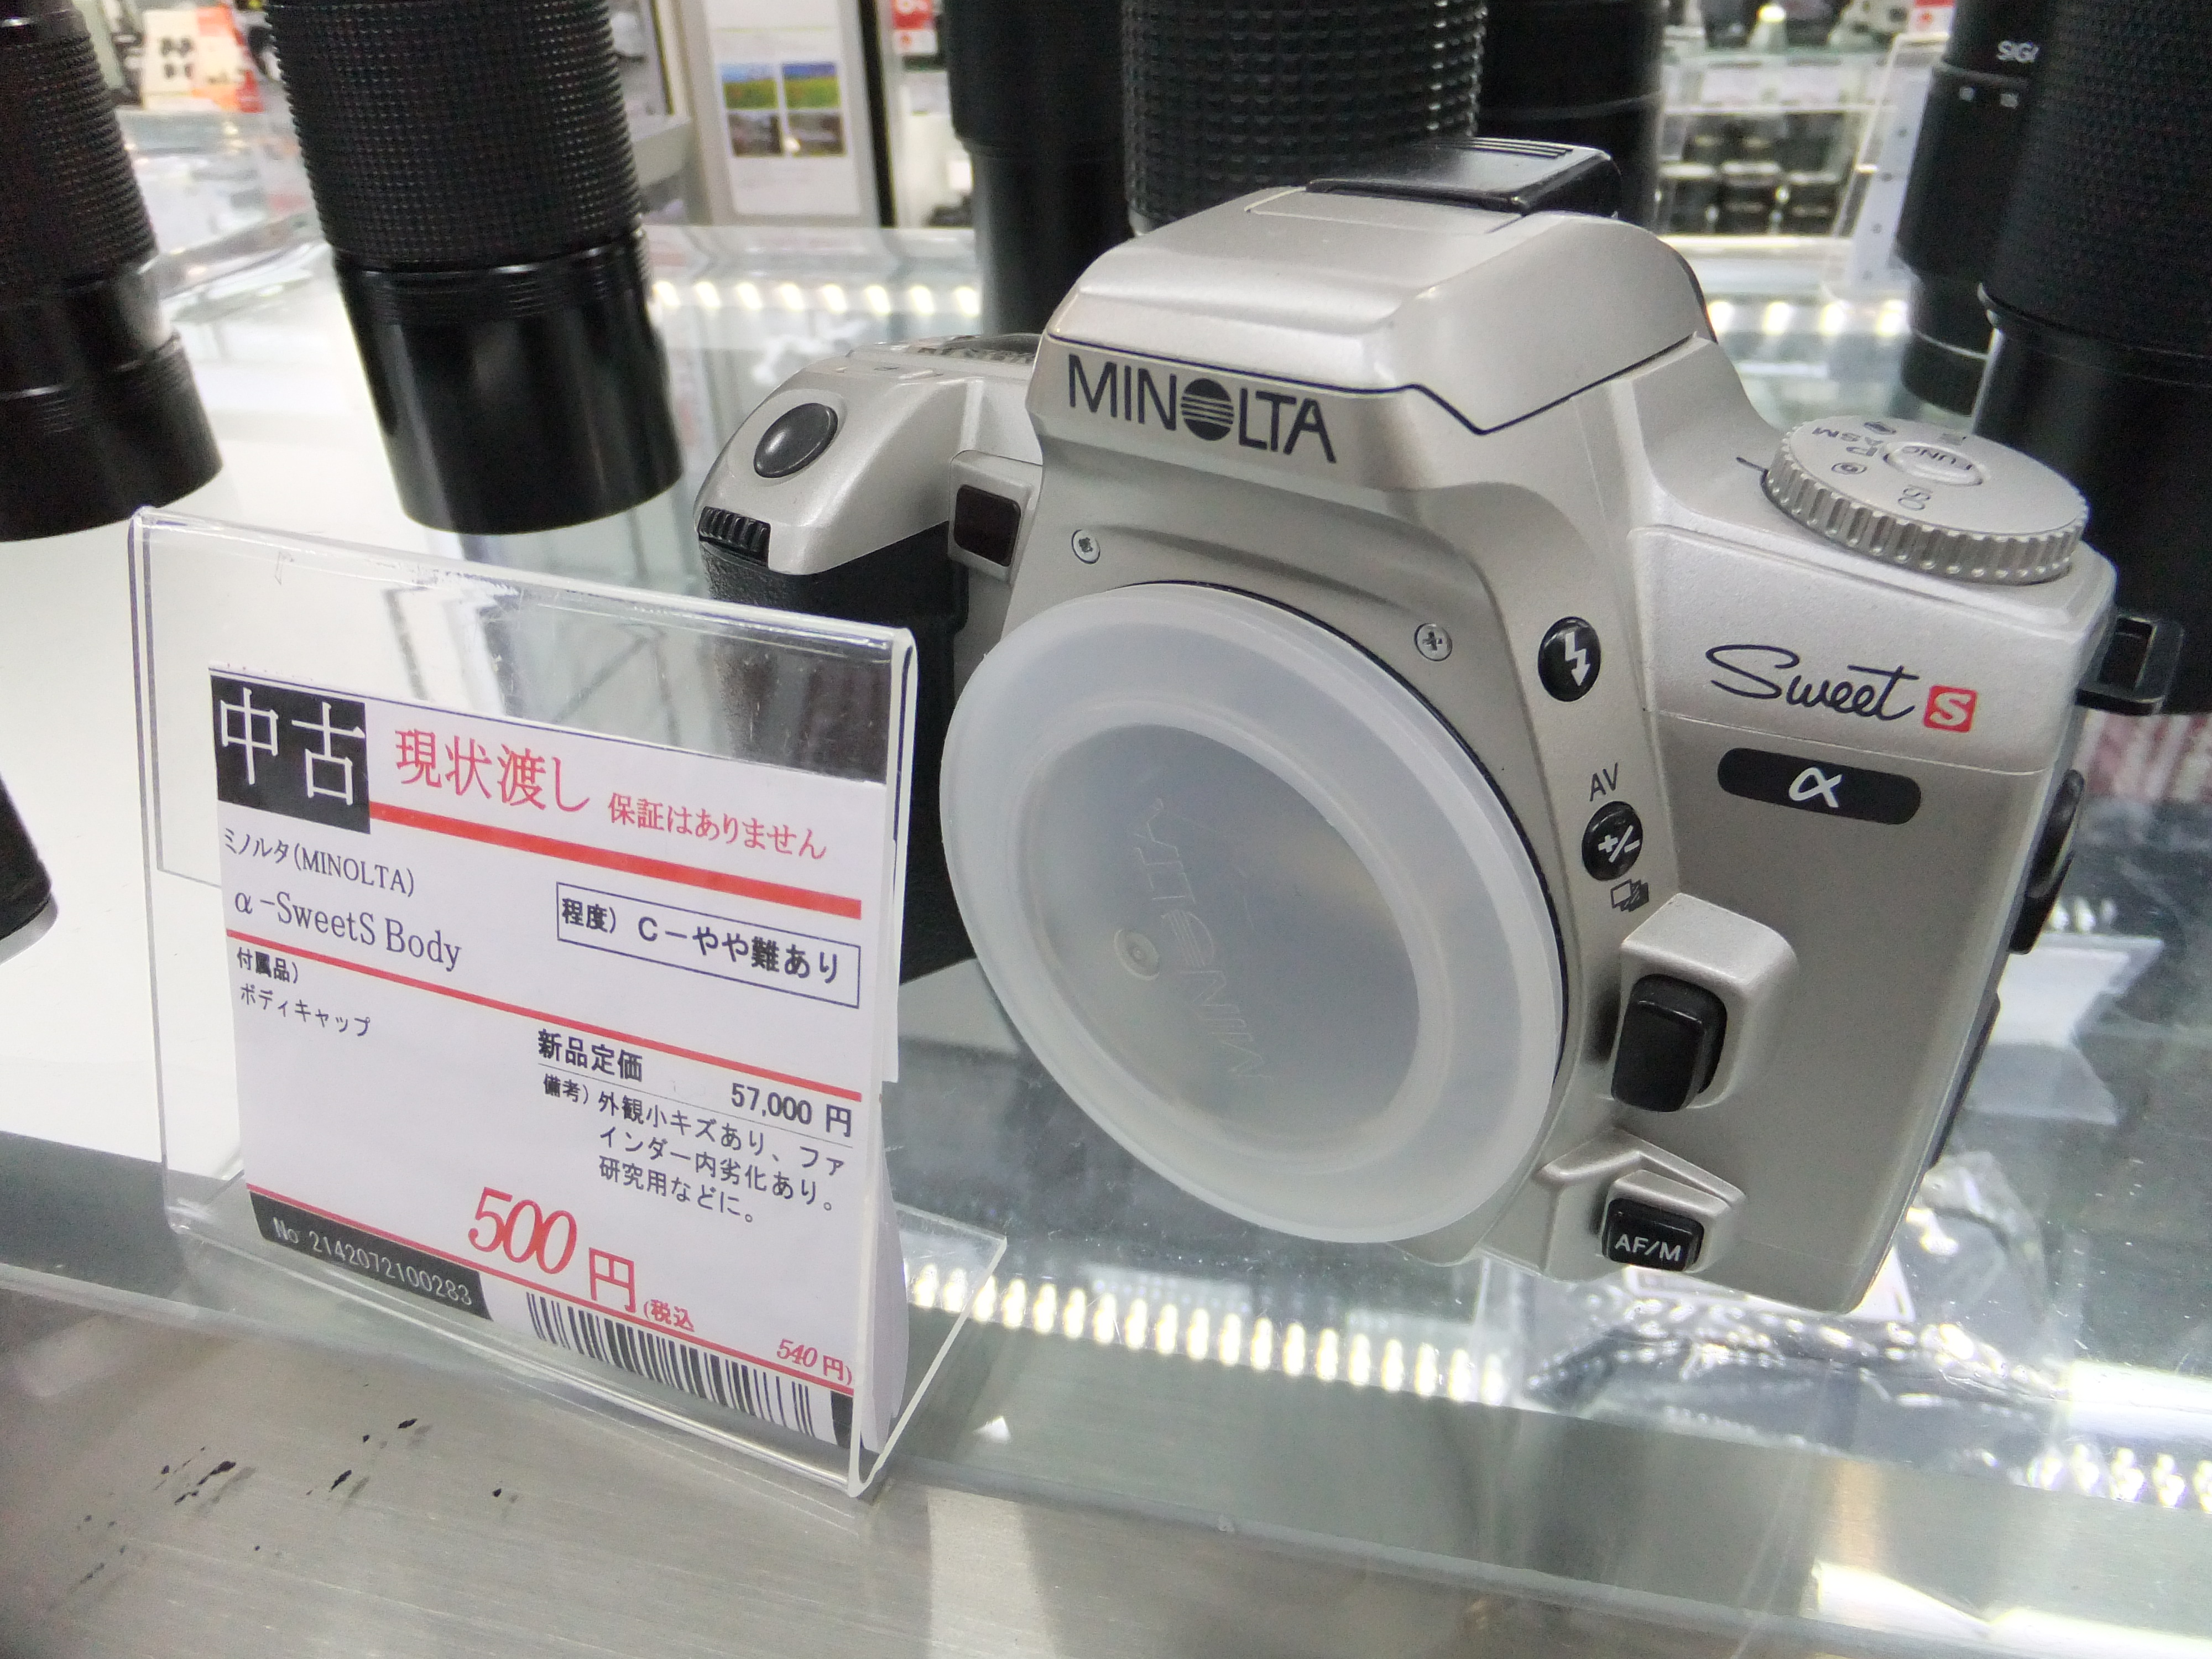 カメラのキタムラ渋谷中古買取センターに行って丁寧にジャンクの魅力を